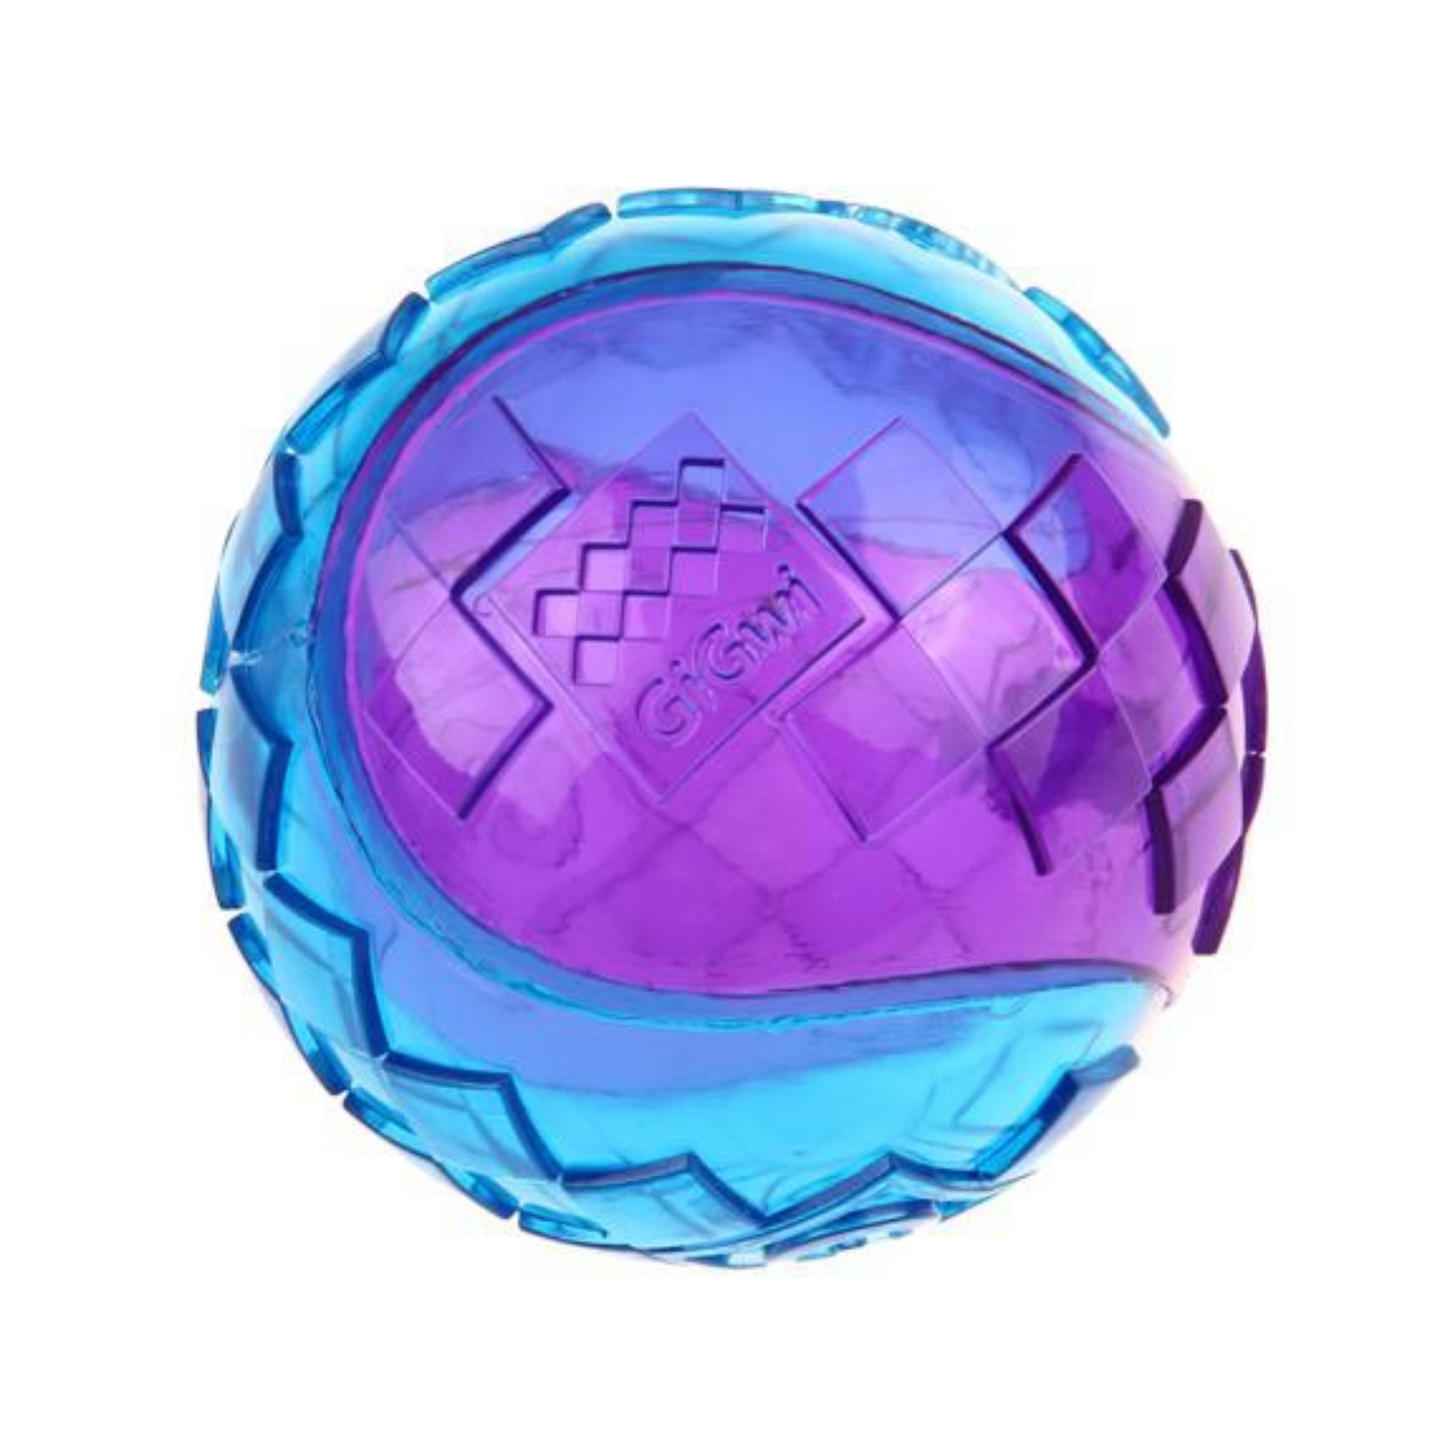 GiGwi Ball Squeaker Transparente Violeta / Azul - M